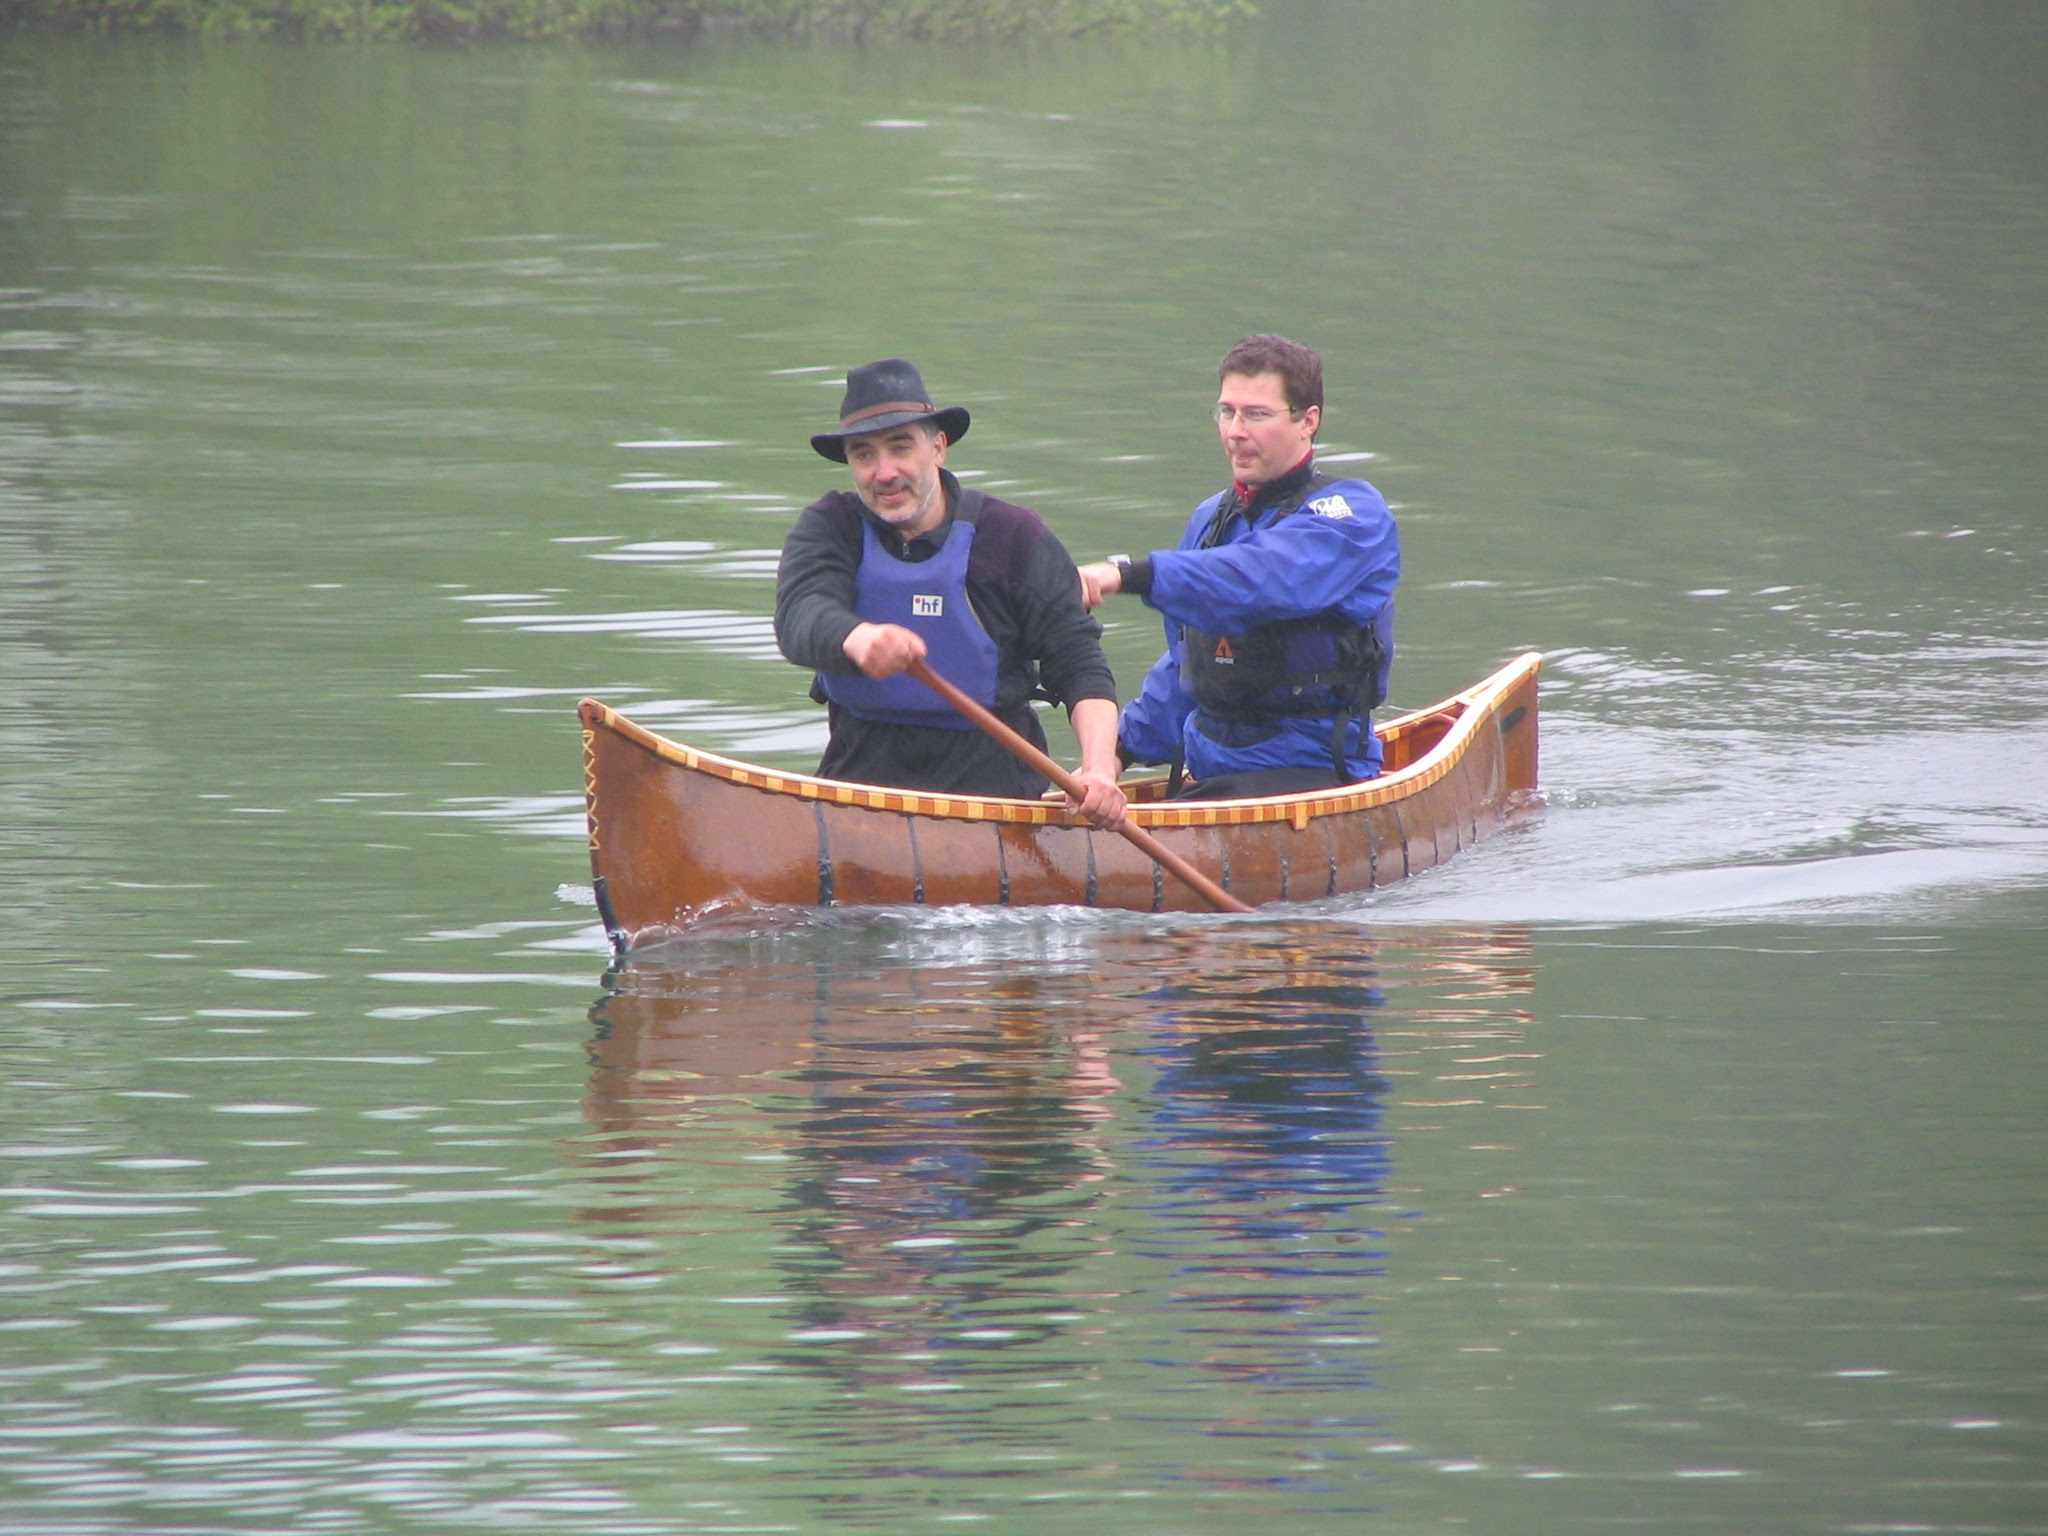 One secret: Model birch bark canoe plans